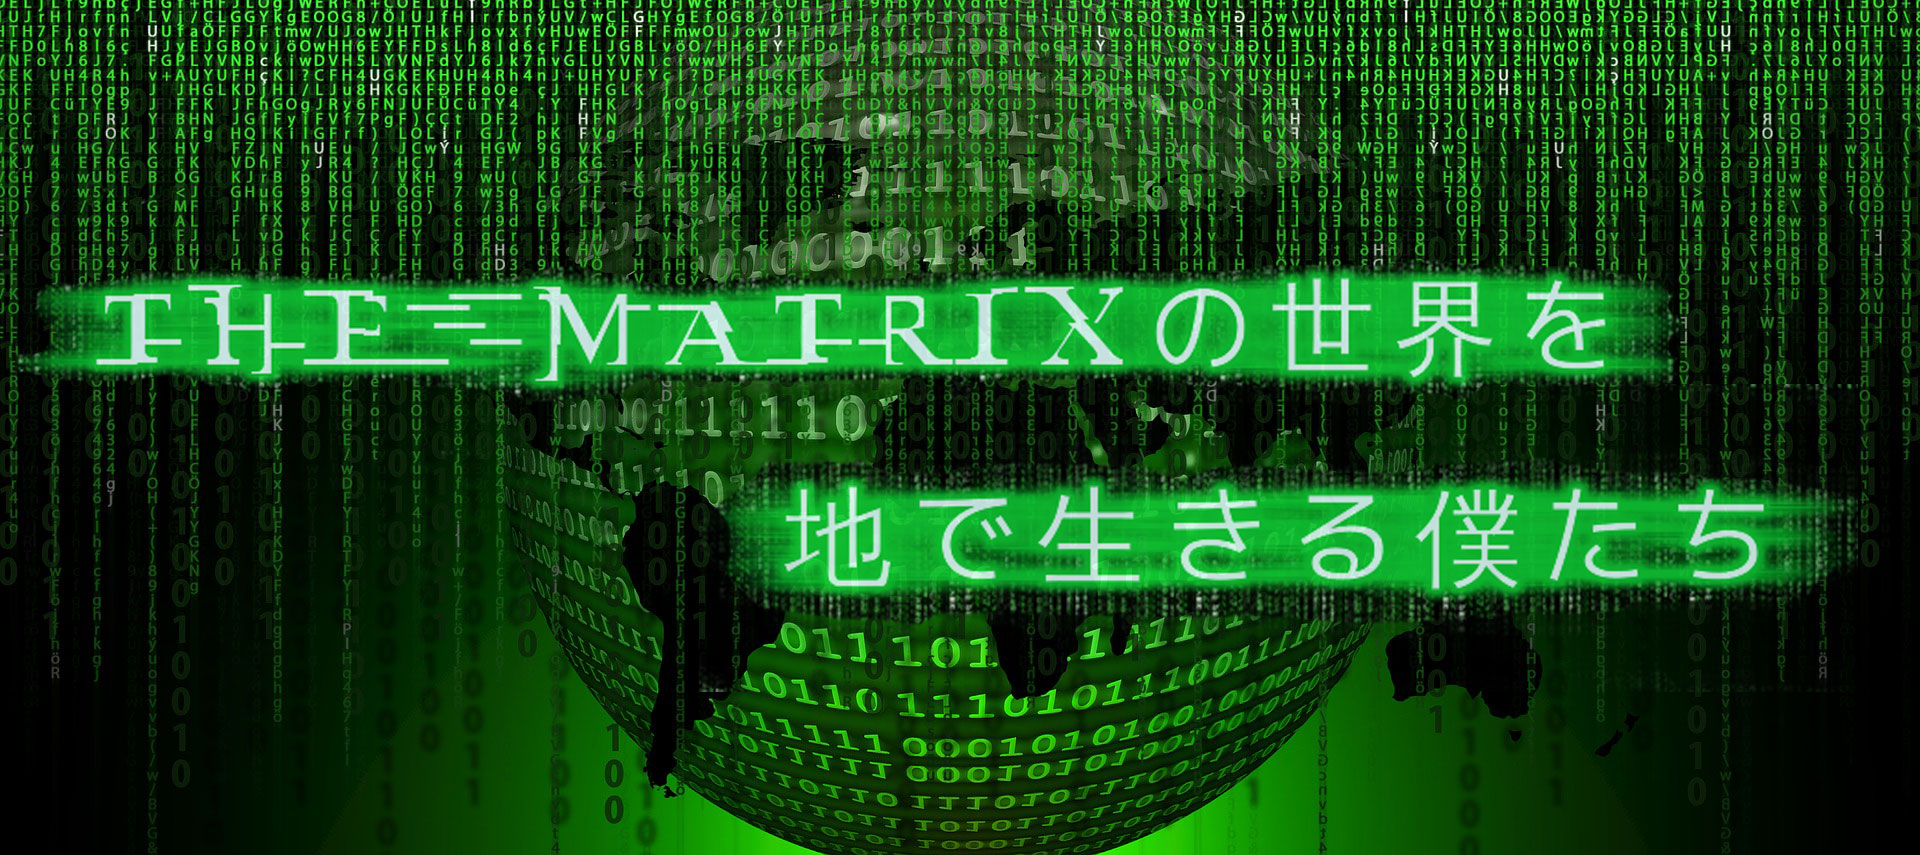 The Matrixの世界を地で生きる僕たち